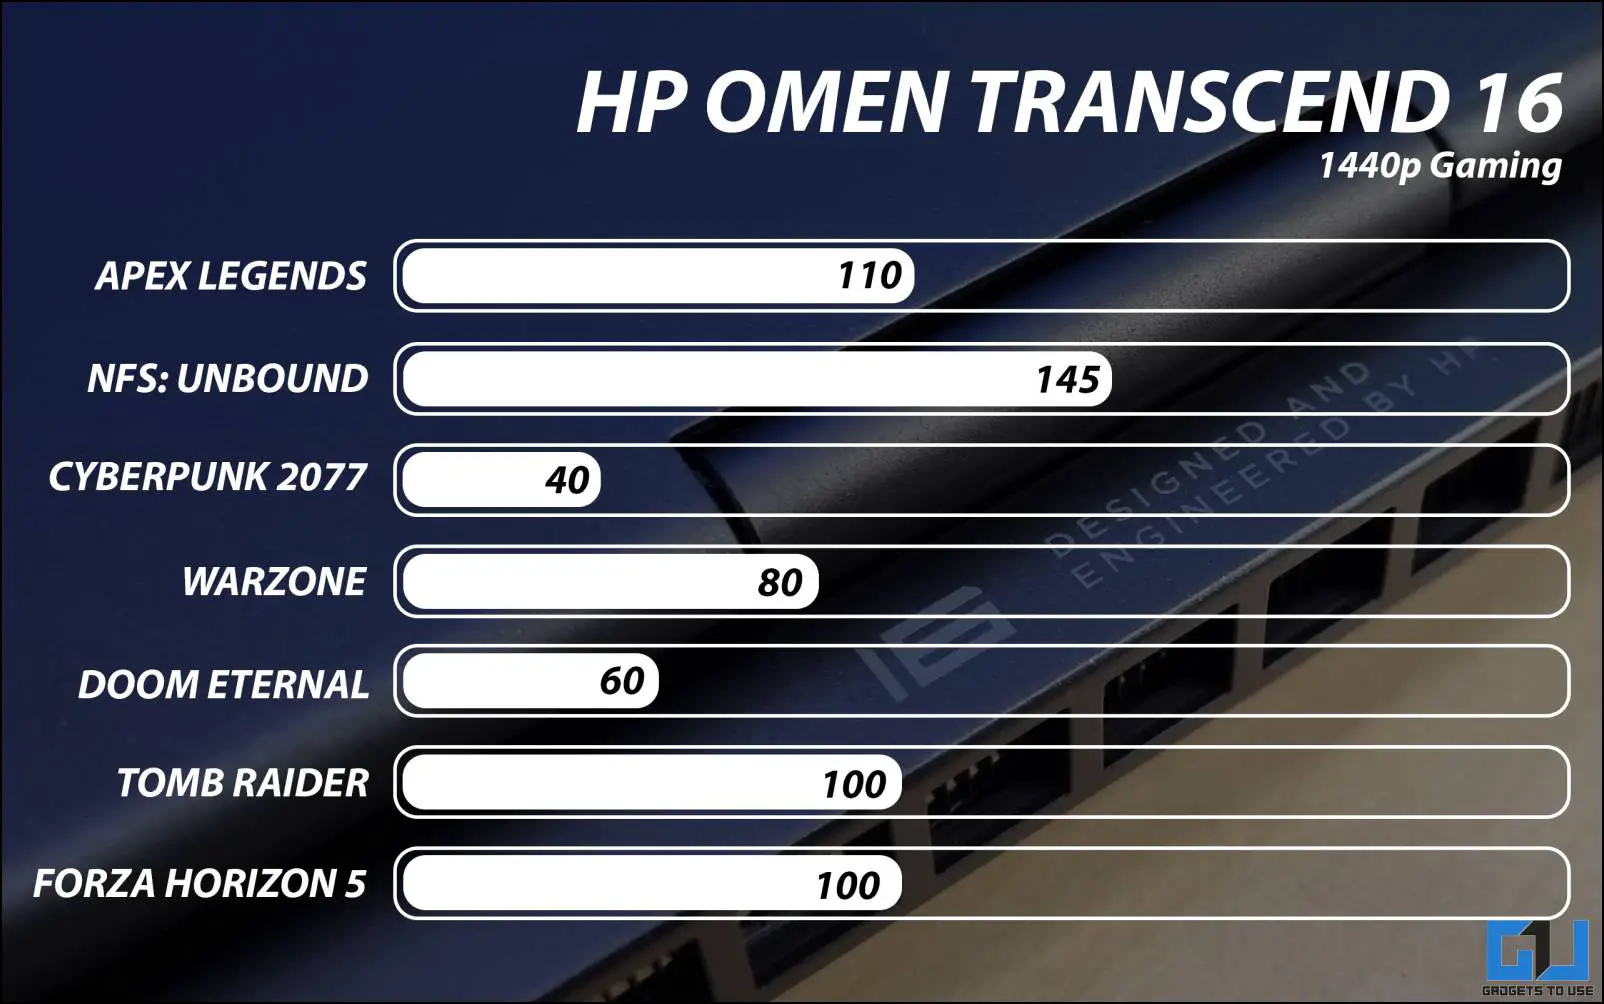 HP 오멘 트랜센드 16 리뷰